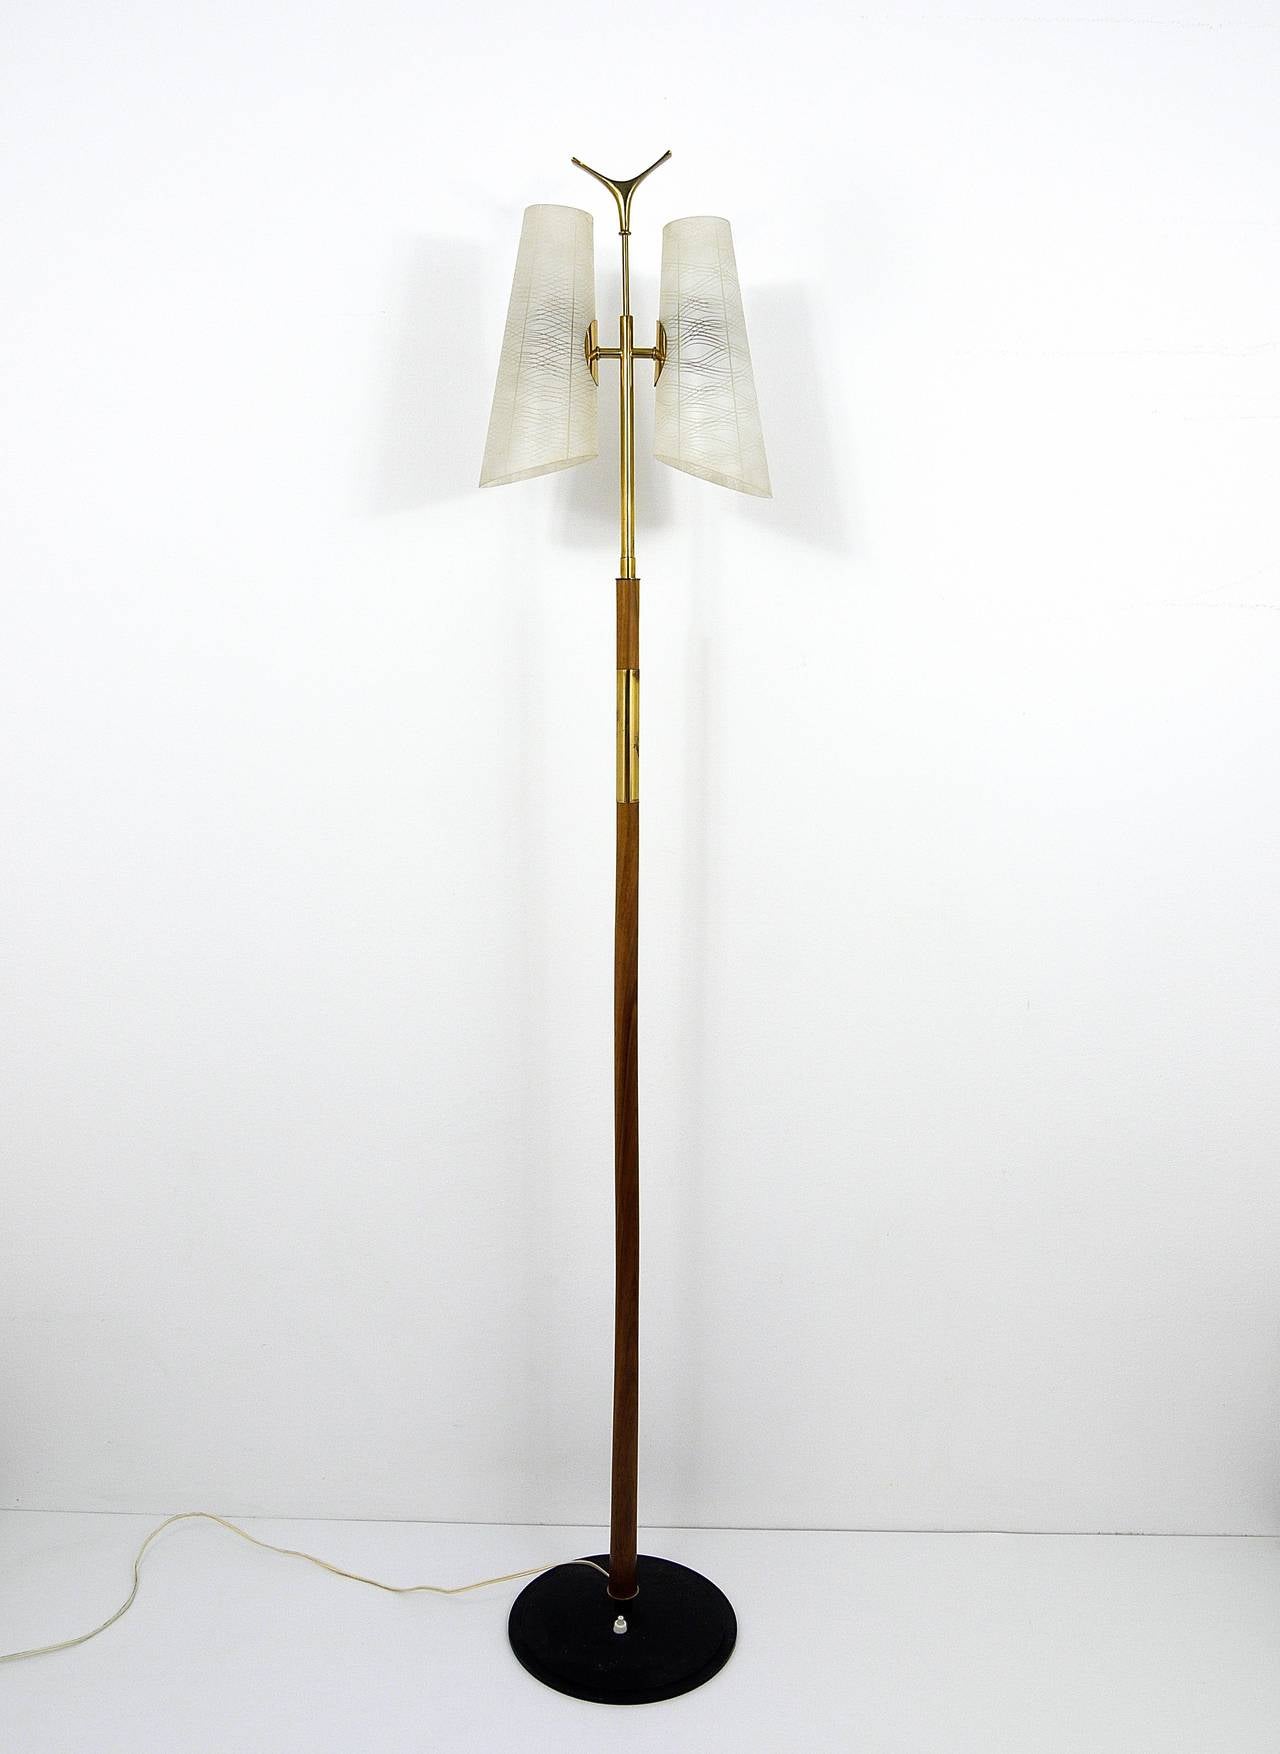 Un magnifique lampadaire moderniste viennois, conçu et exécuté par Rubert Nikoll dans les années 1950. Elle possède une base en fonte noire, une tige en bois, de jolis détails en laiton, de jolis abat-jour en verre rayé et un charmant plateau en